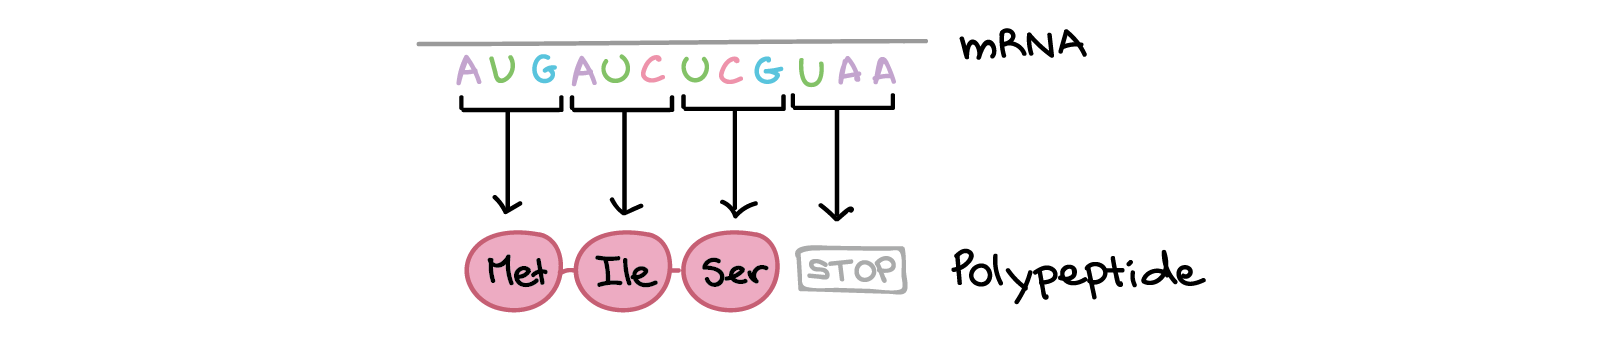 A sequência de RNAm é:

5'-AUGAUCUCGUAA-5'

A tradução envolve a leitura dos nucleotídeos do RNAm em grupos de três, cada qual especifica um aminoácido (ou fornece um sinal de parada indicando que a tradução terminou).

3'-AUG AUC UCG UAA-5'

AUG $\rightarrow$ Metionina
AUC $\rightarrow$ Isoleucina
UCG $\rightarrow$ Serina
UAA $\rightarrow$ "Pare"

Sequência de polipeptídeo: (N-terminal) Metionina-Isoleucina-Serina (C-terminal)